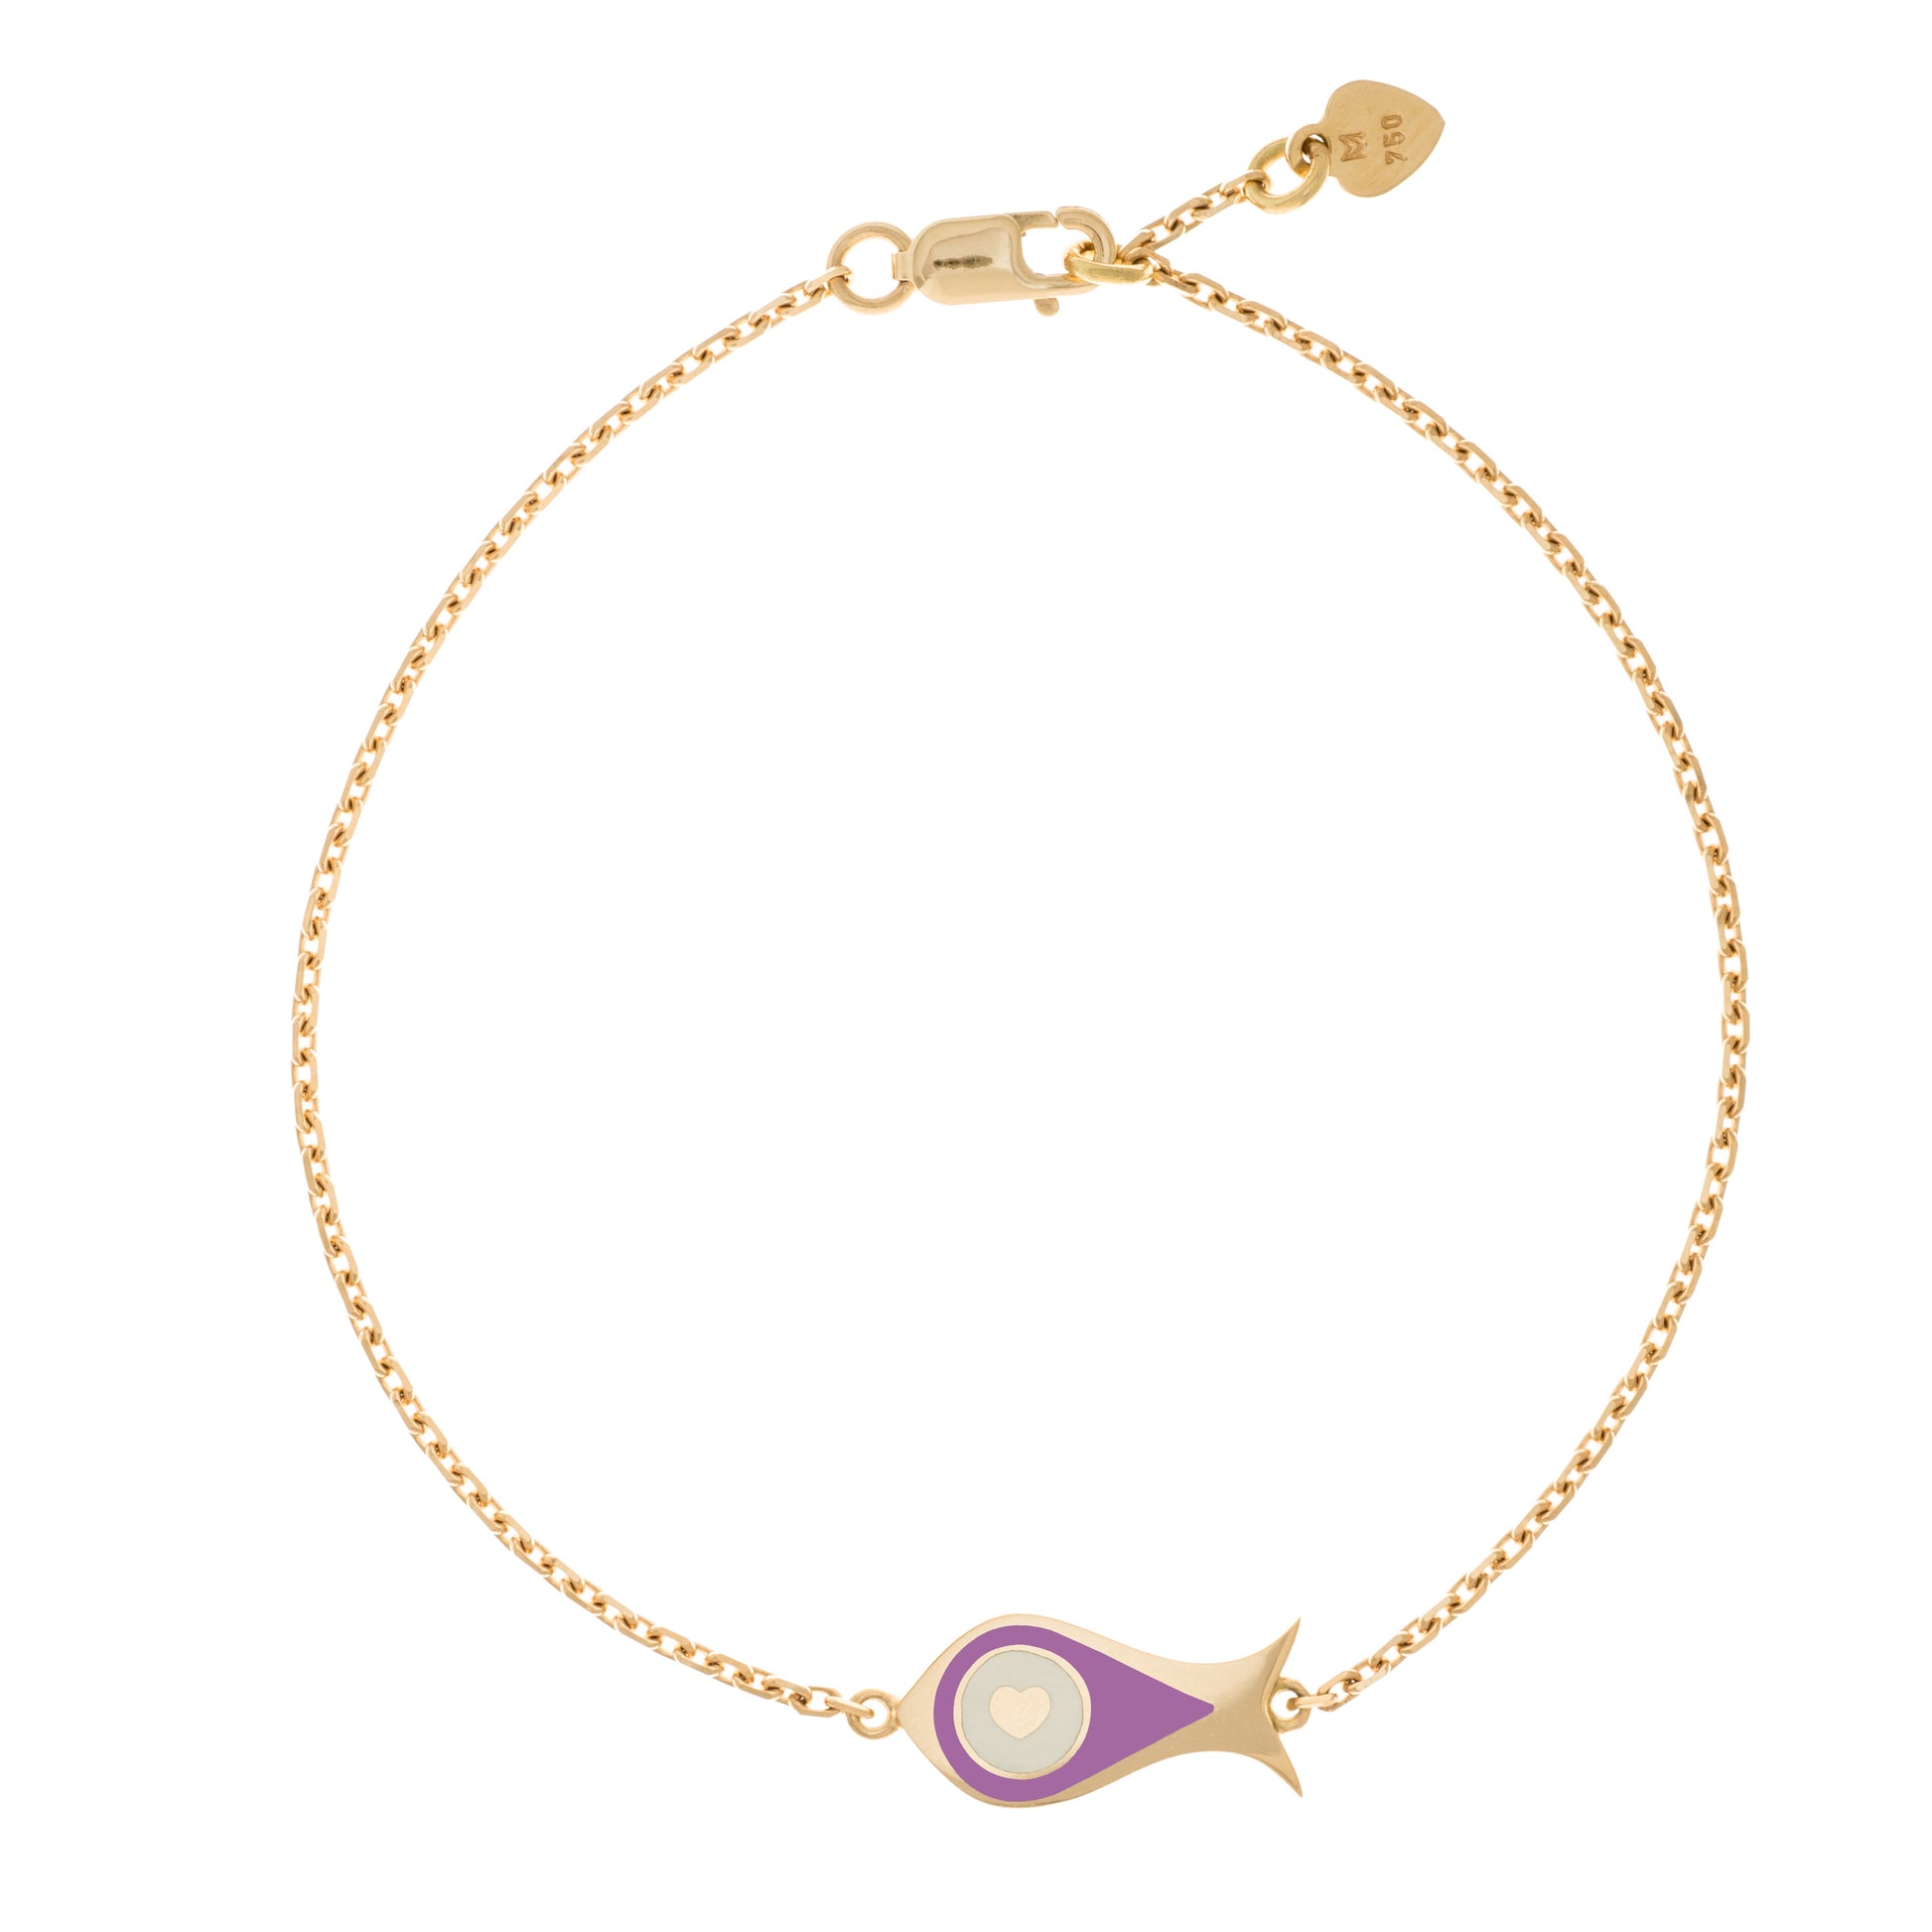 MORA bijoux, bracelet Poisson-coeur lchthys émaillé violet d'un diamètre de 15mm en or jaune 18 carats. Longueur de la chaîne 16cm avec un petit coeur en or jaune 18 carats soudé sur le fermoir.